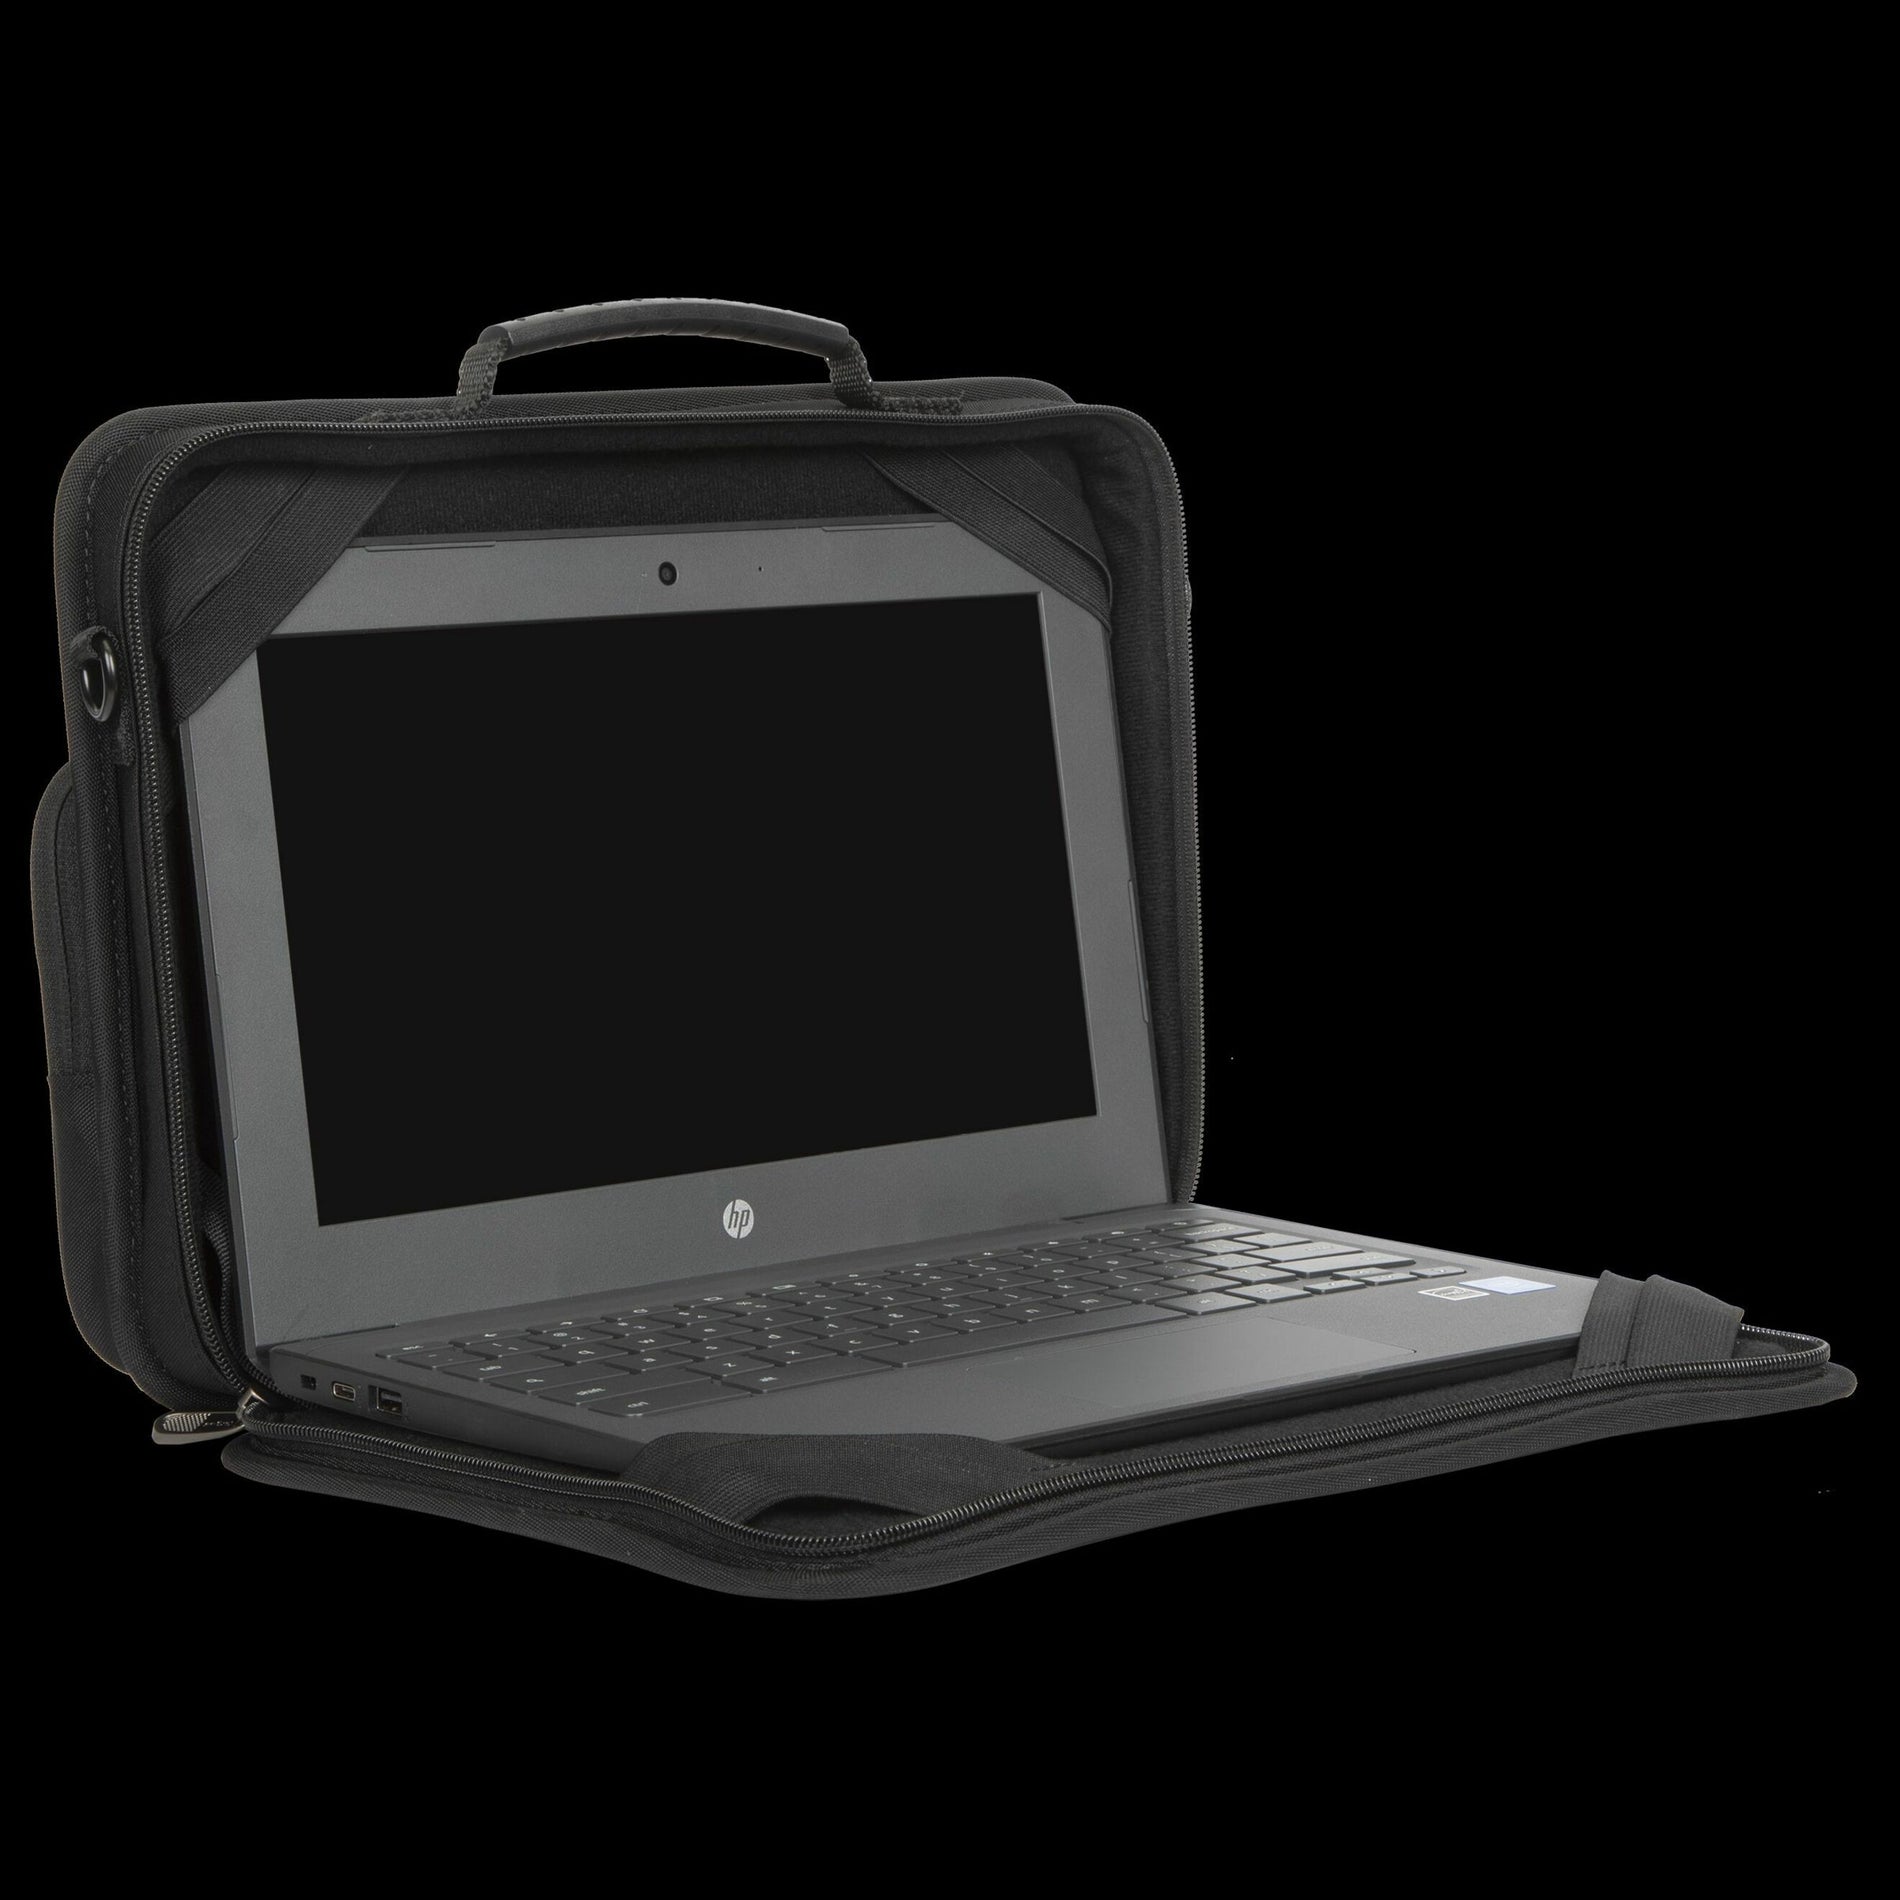 Targus TKC001 116" Work-in-Hülle mit EcoSmart für Chromebook Gepolsterter Schultergurt Reißverschlusstasche